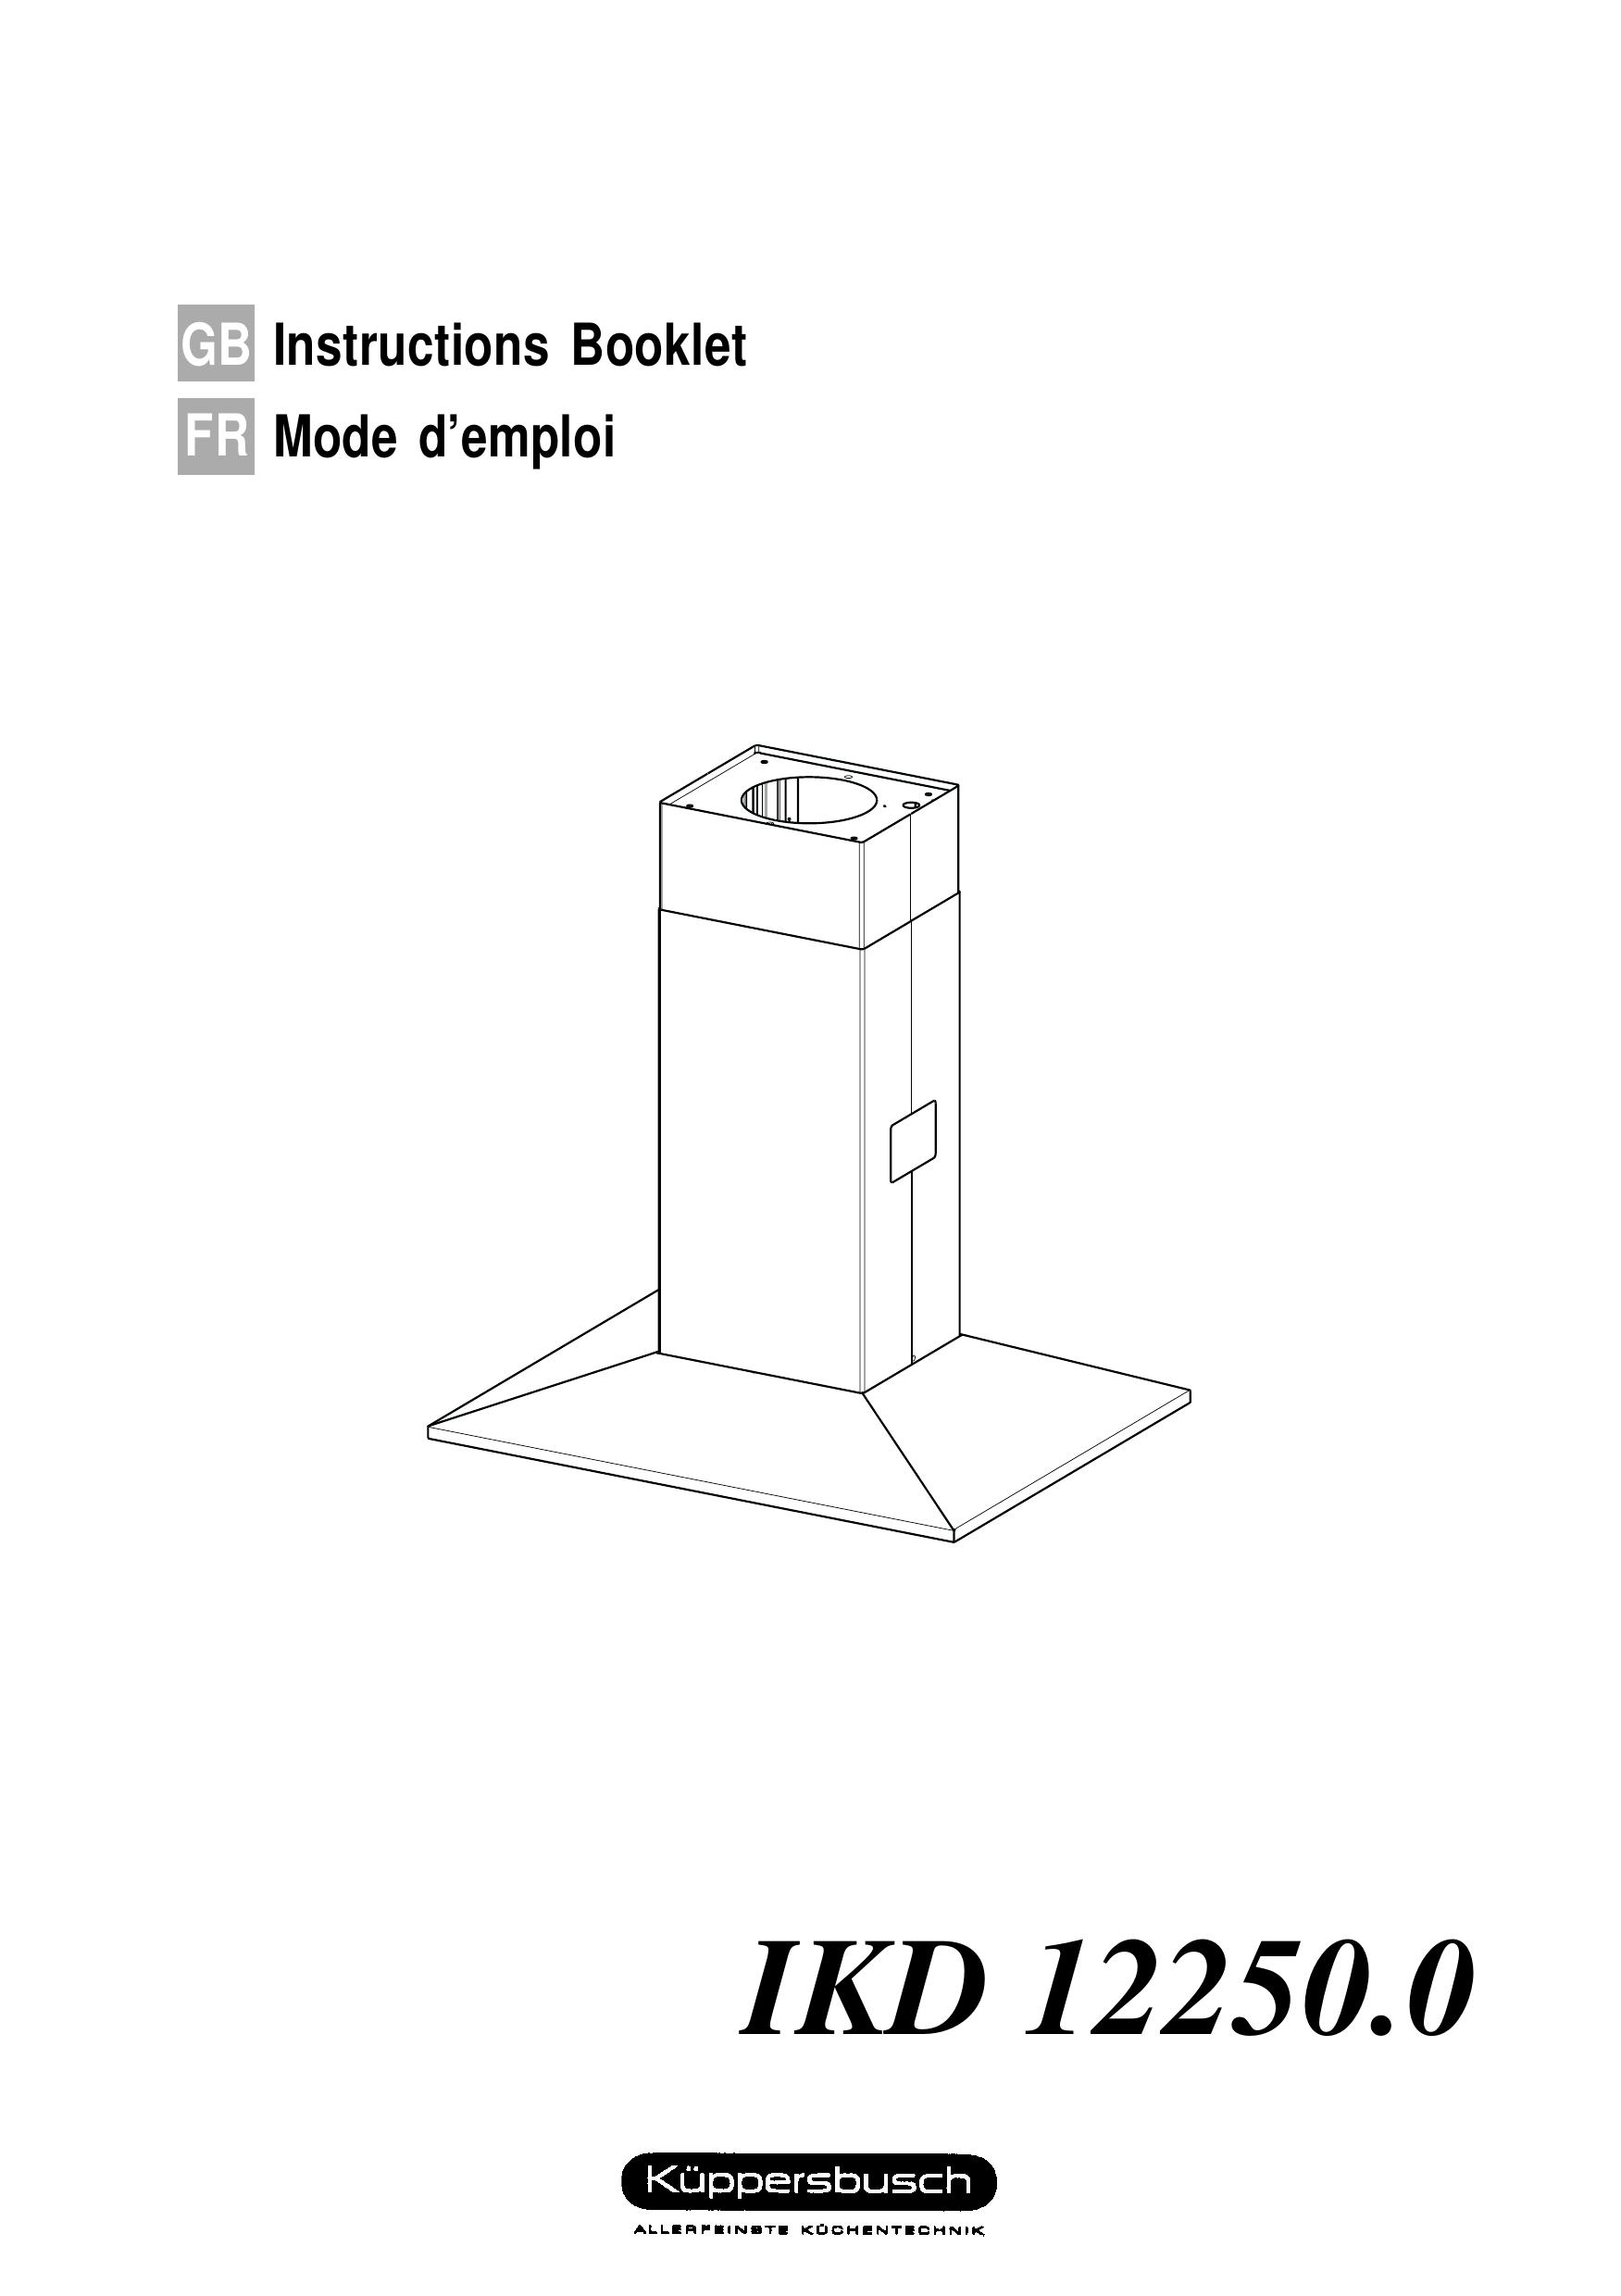 Kuppersbusch USA IKD 12250.0 Ventilation Hood User Manual